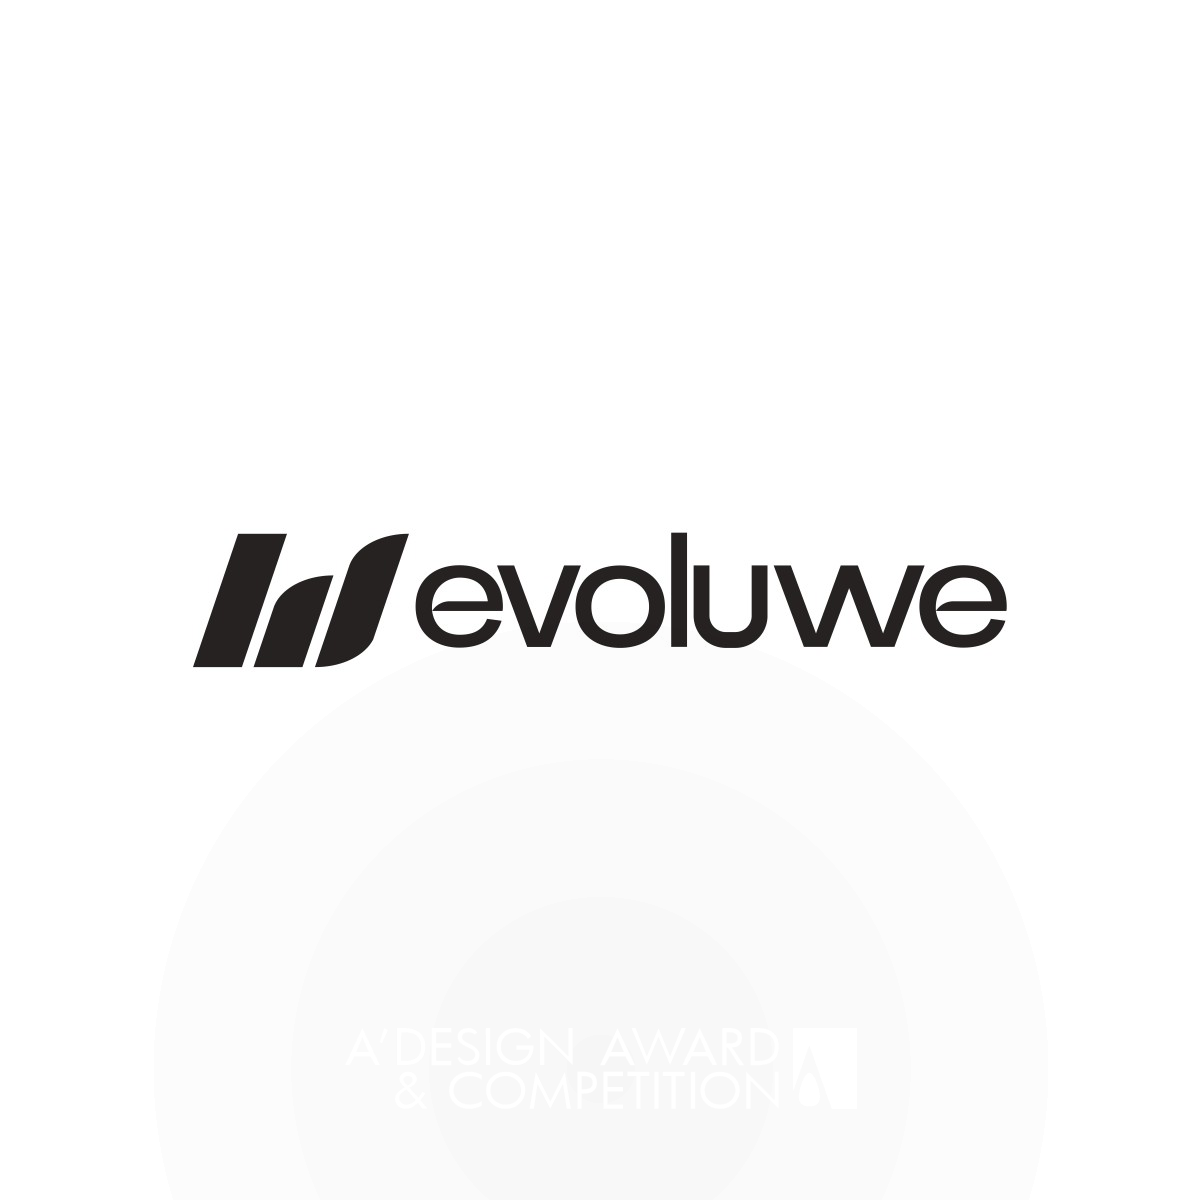 Evoluwe: Um Projeto de Branding Inovador